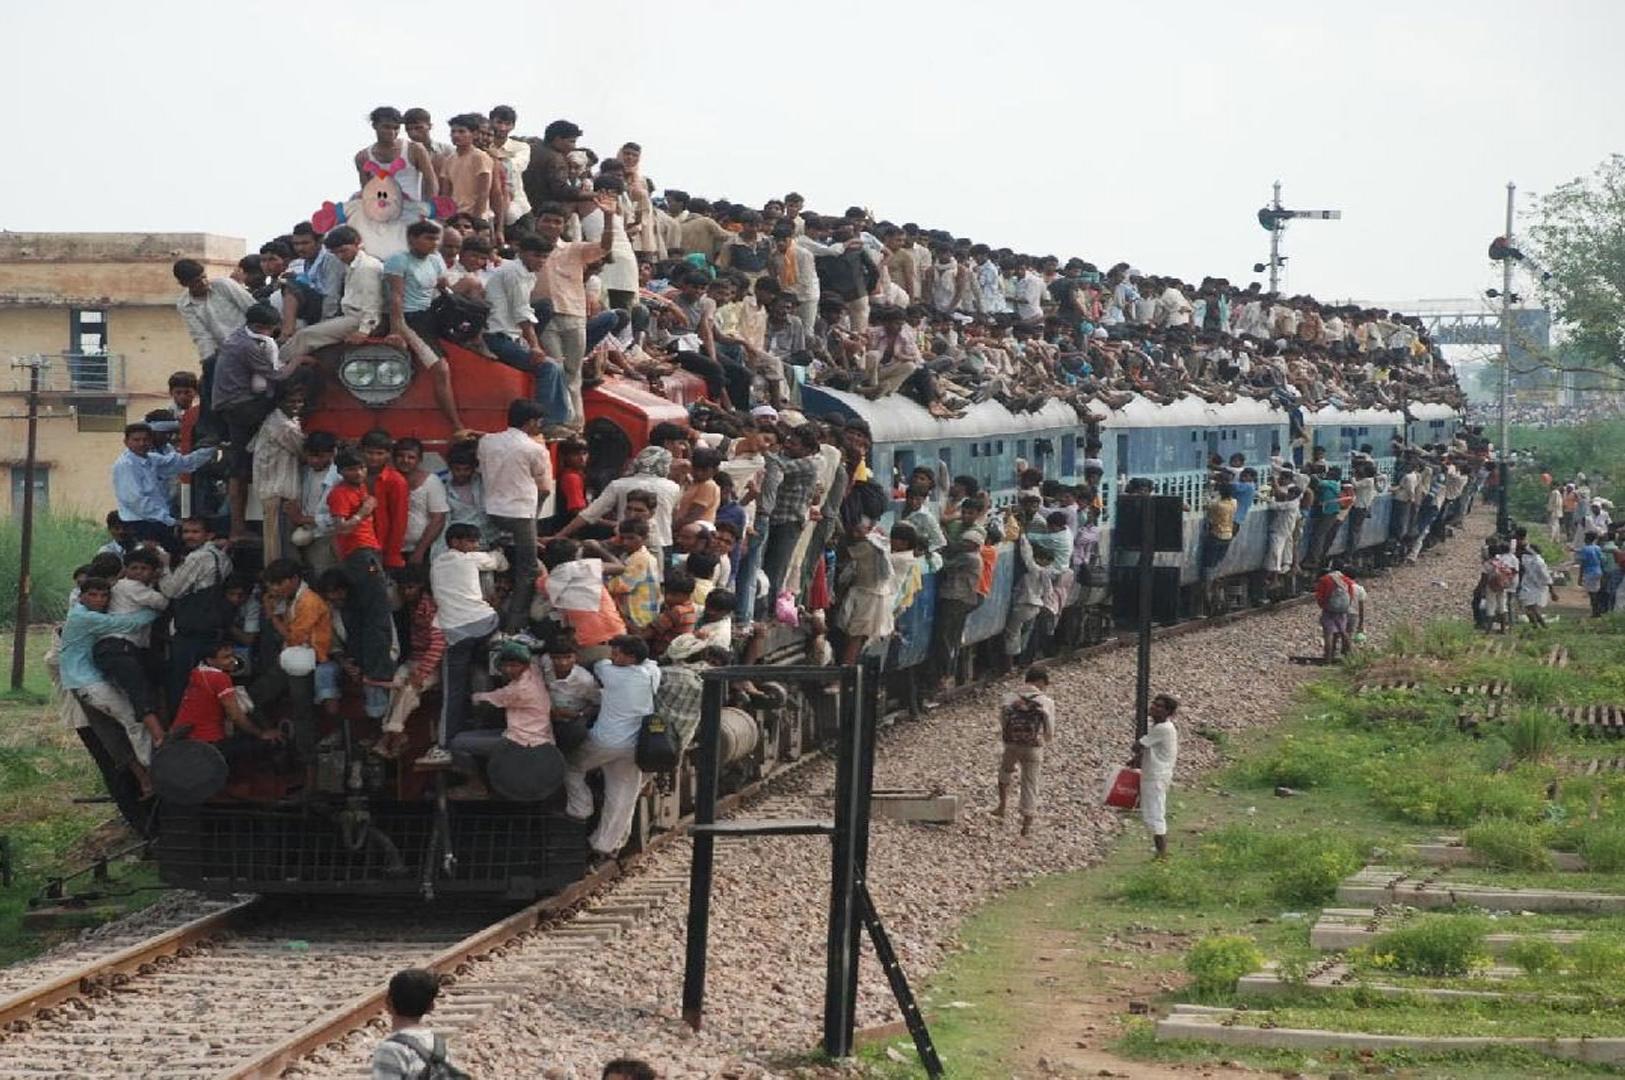 你是不是还以为印度的火车上爬满了人[22P]|无奇不有 - 武当休闲山庄 - 稳定,和谐,人性化的中文社区